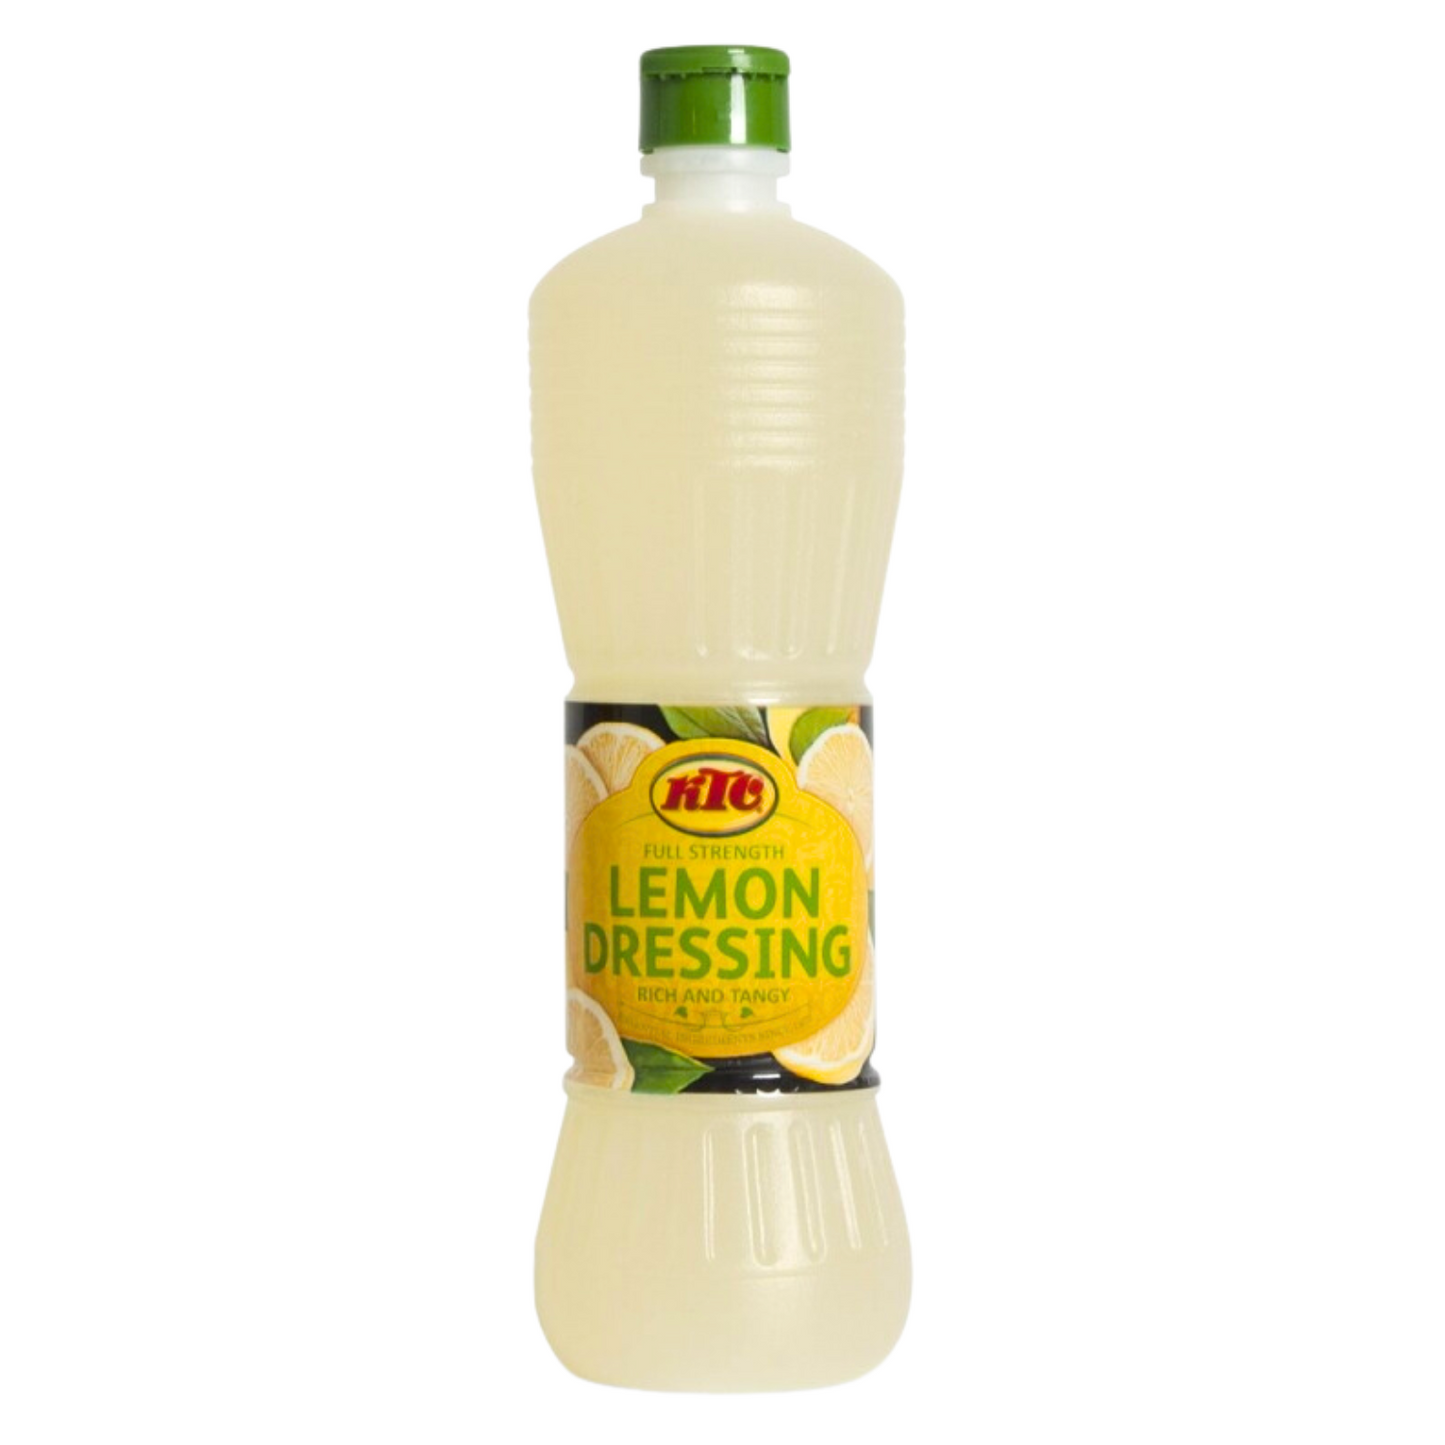 Lemon Dressing - 240 ml